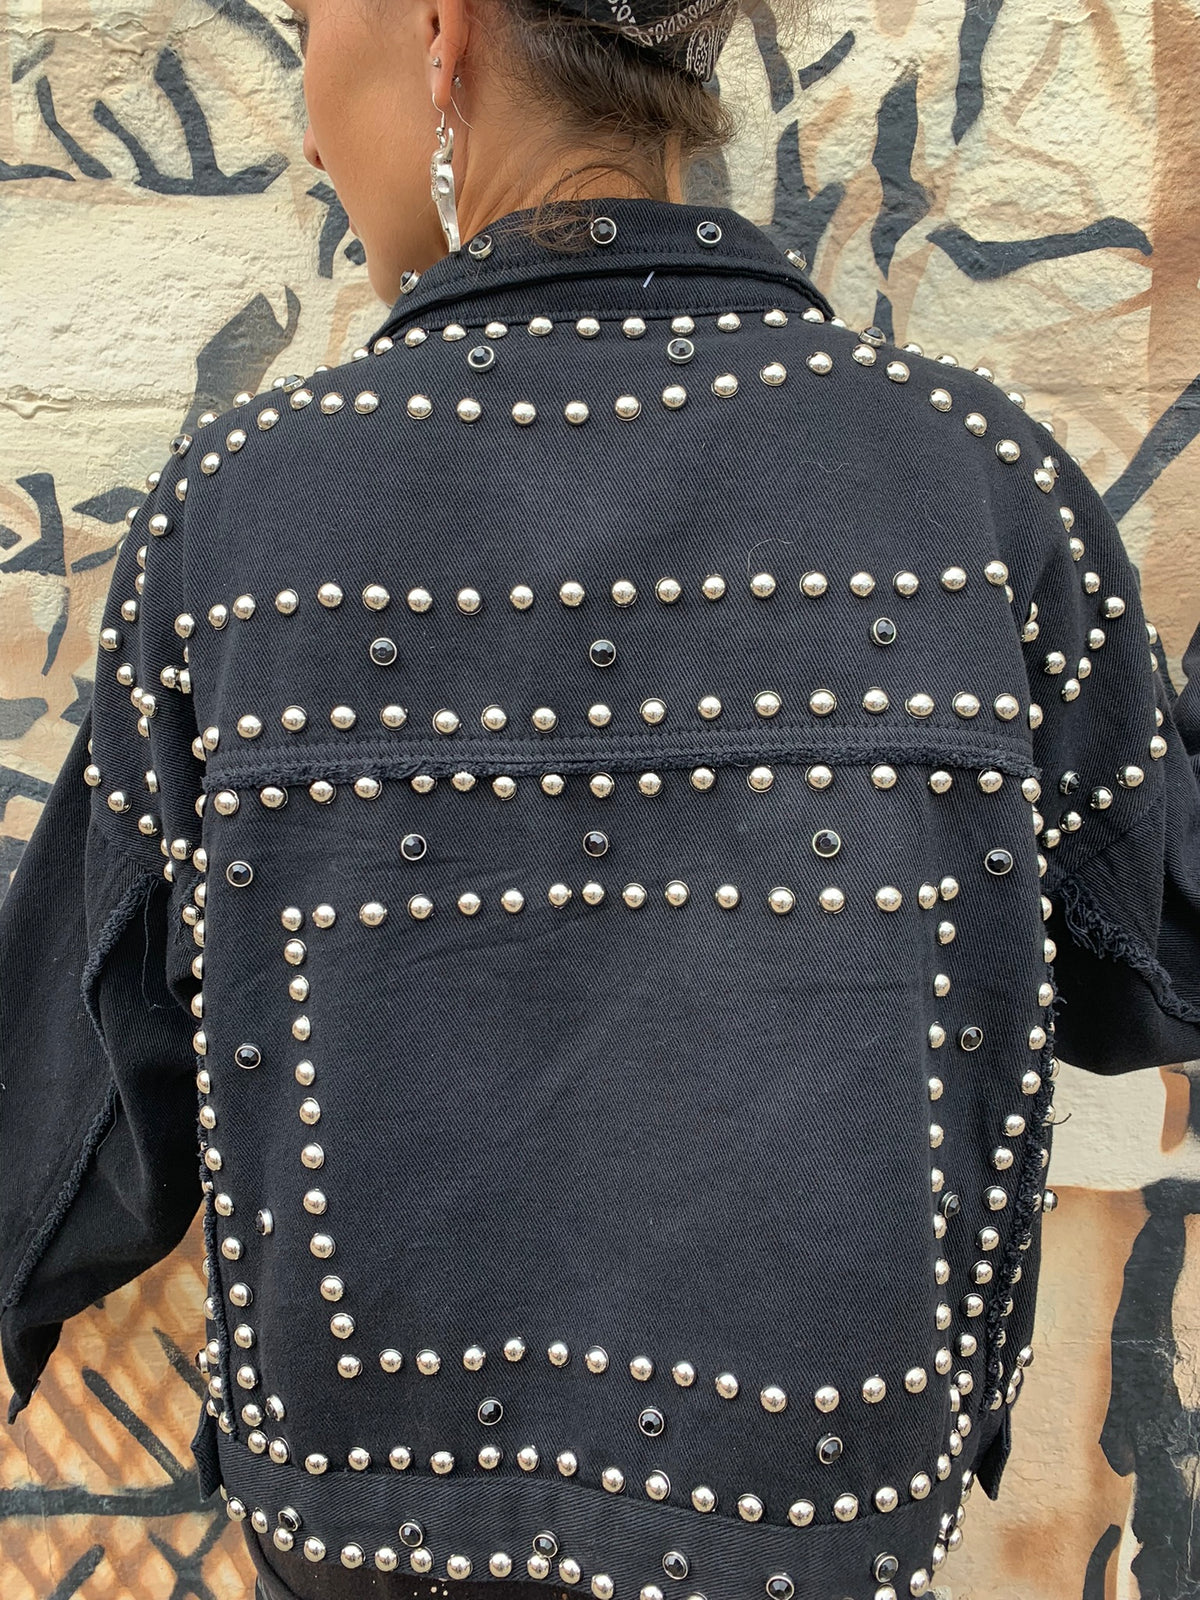 Rhinestone Studded Jacket